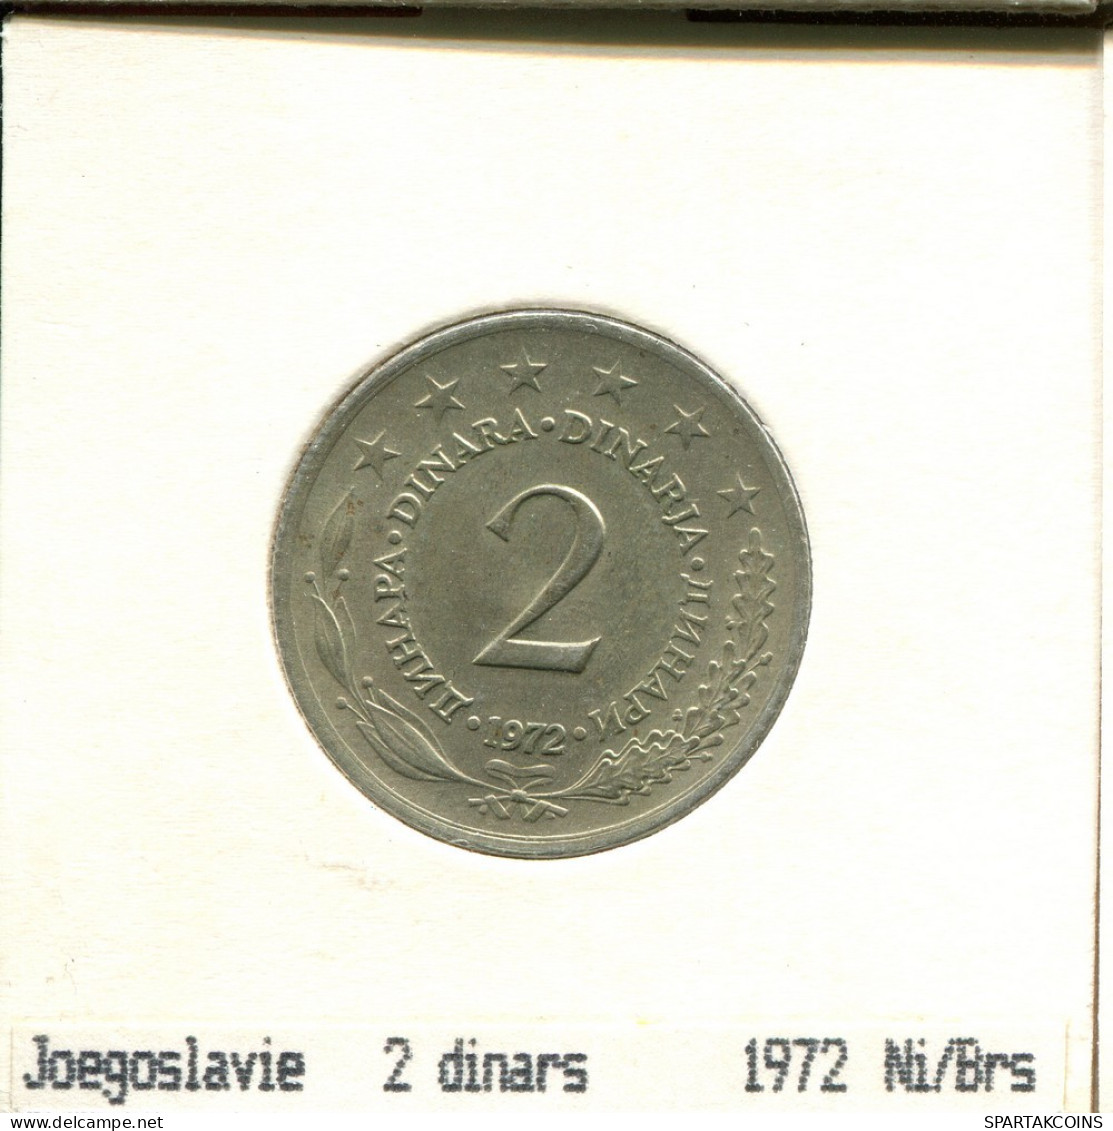 2 DINARA 1972 JUGOSLAWIEN YUGOSLAVIA Münze #AS608.D.A - Jugoslawien